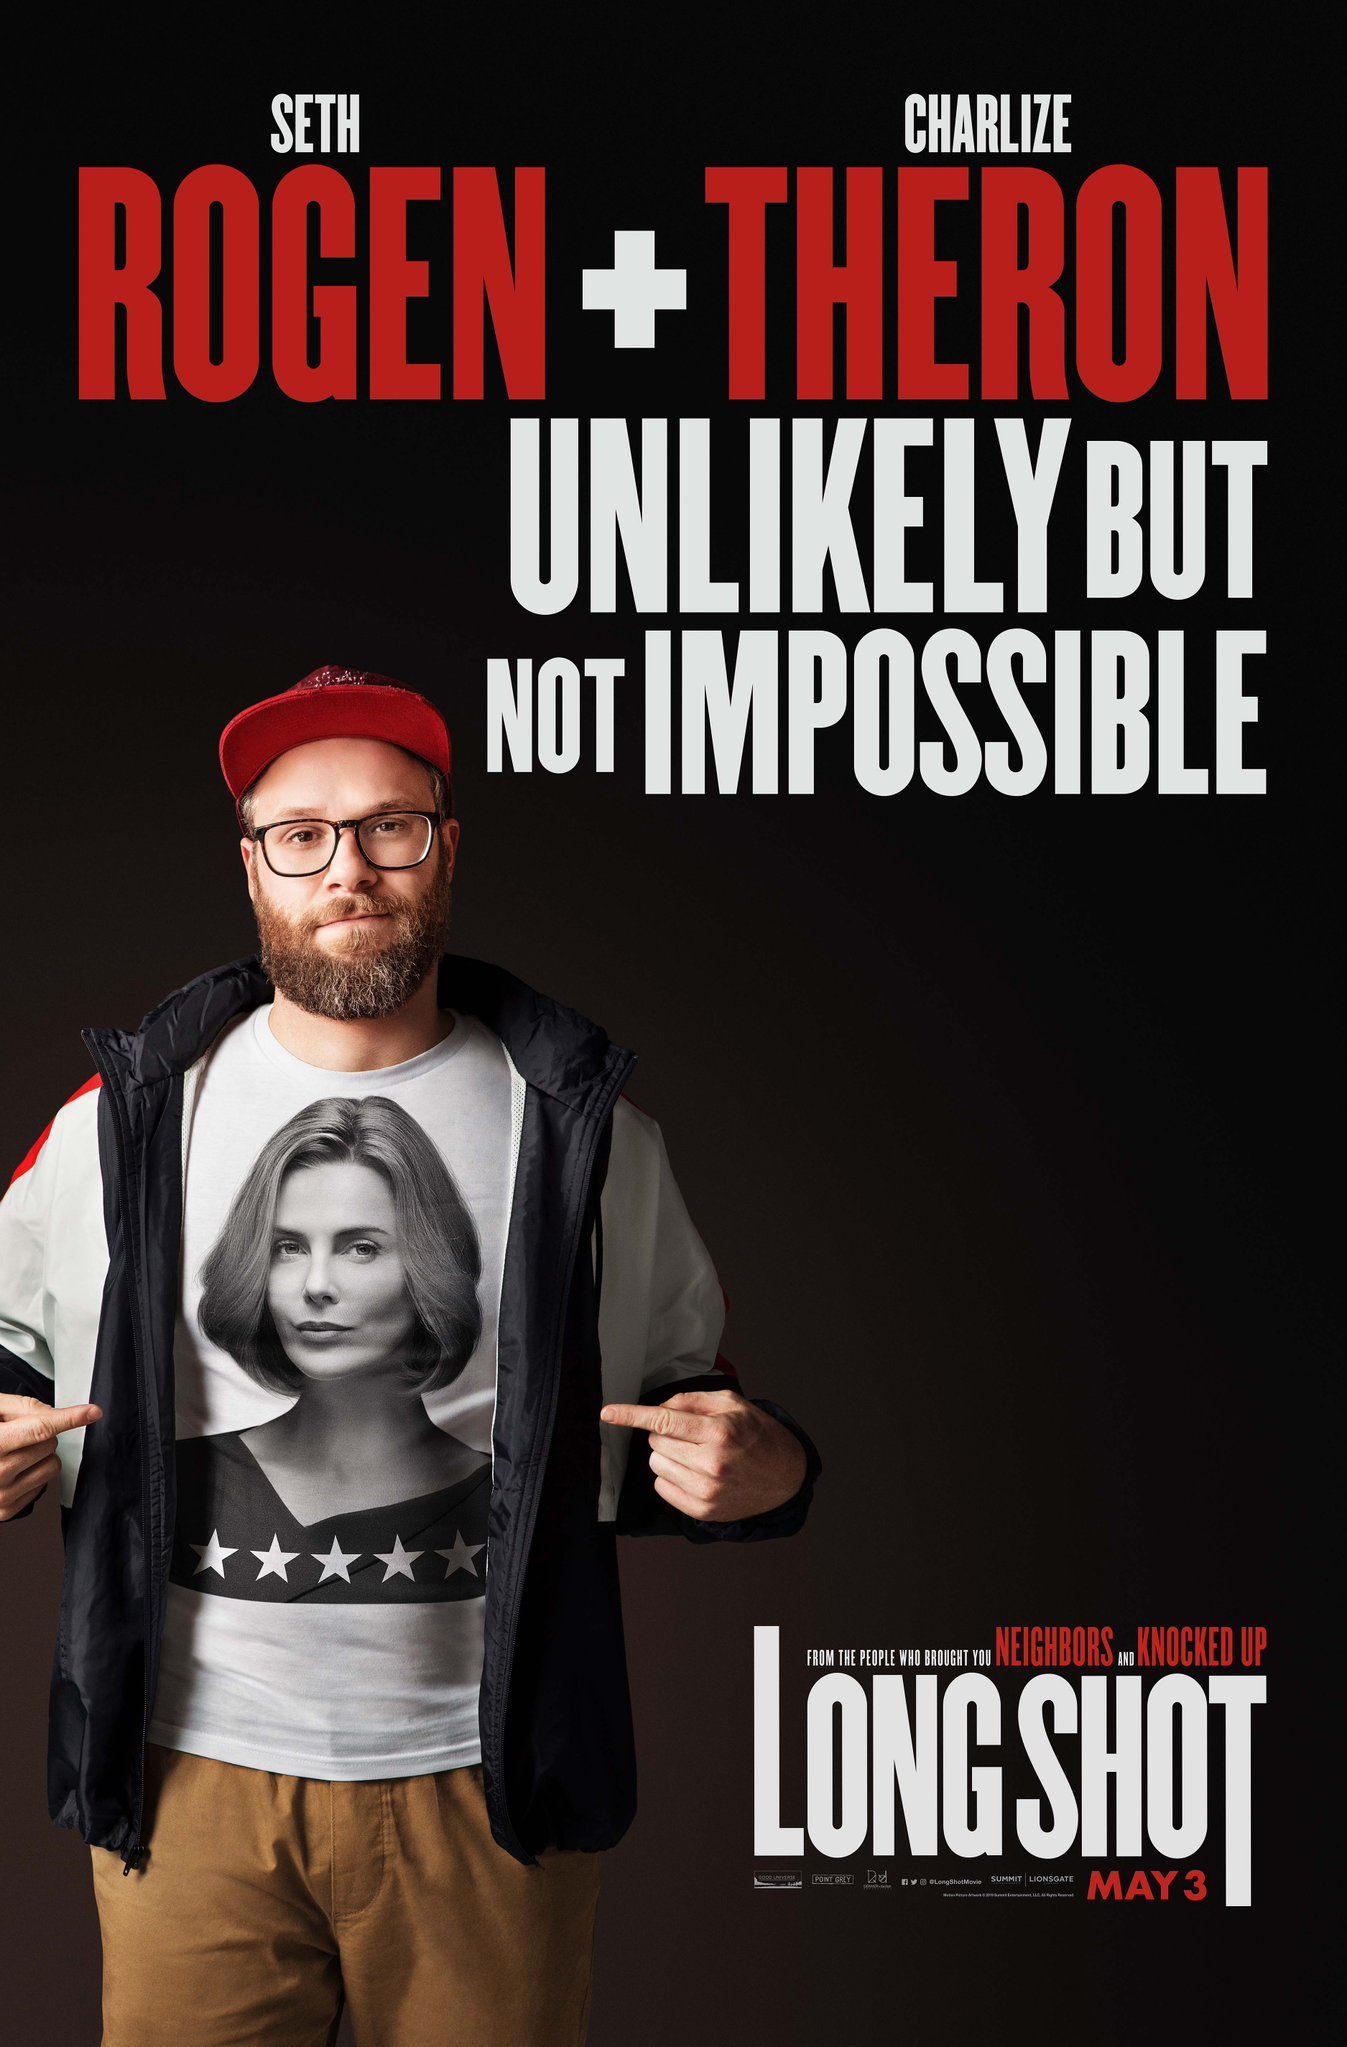 Seth Rogen sa v bláznivej komédii zamiluje do prezidentskej kandidátky na Charlize Theron, ktorá ho kedysi opatrovala